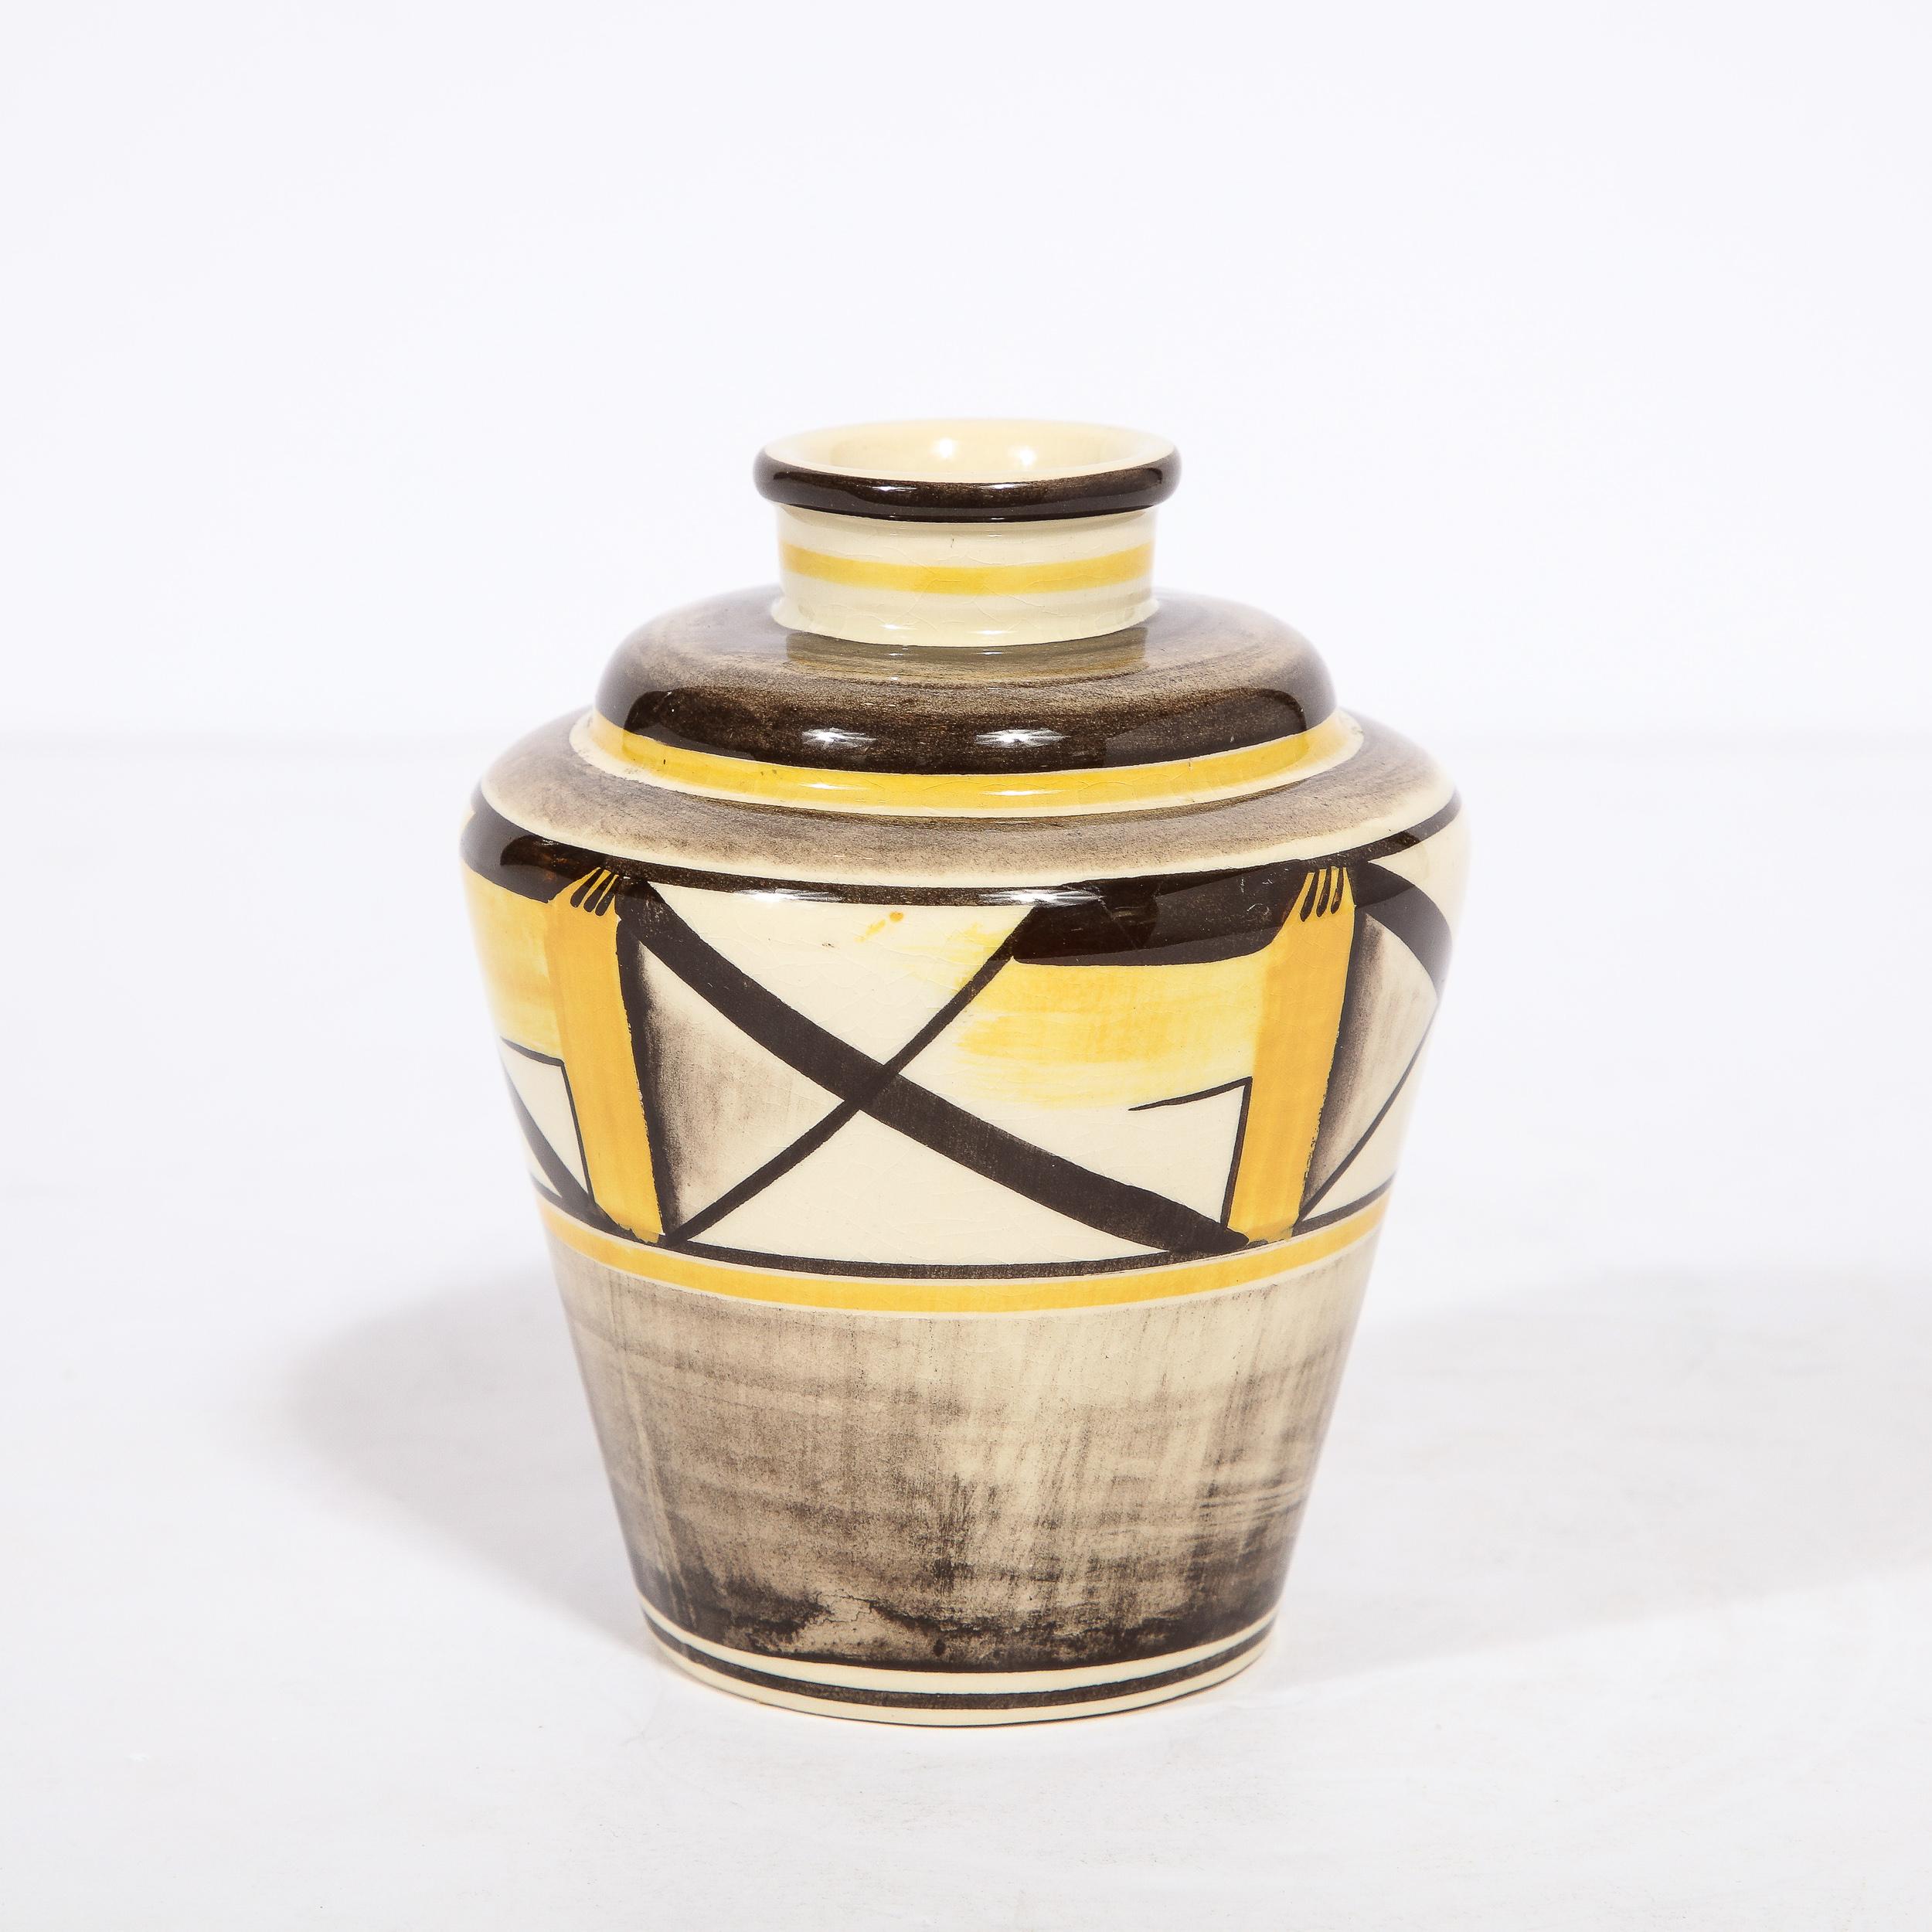 Diese wunderschöne handbemalte Keramikvase wurde von dem angesehenen schwedischen Keramiker Arthur Percy für Gefle um 1920 hergestellt. Sie hat einen subtil konischen Körper mit schräg angesetzten Schultern, einen zylindrischen Hals und eine runde